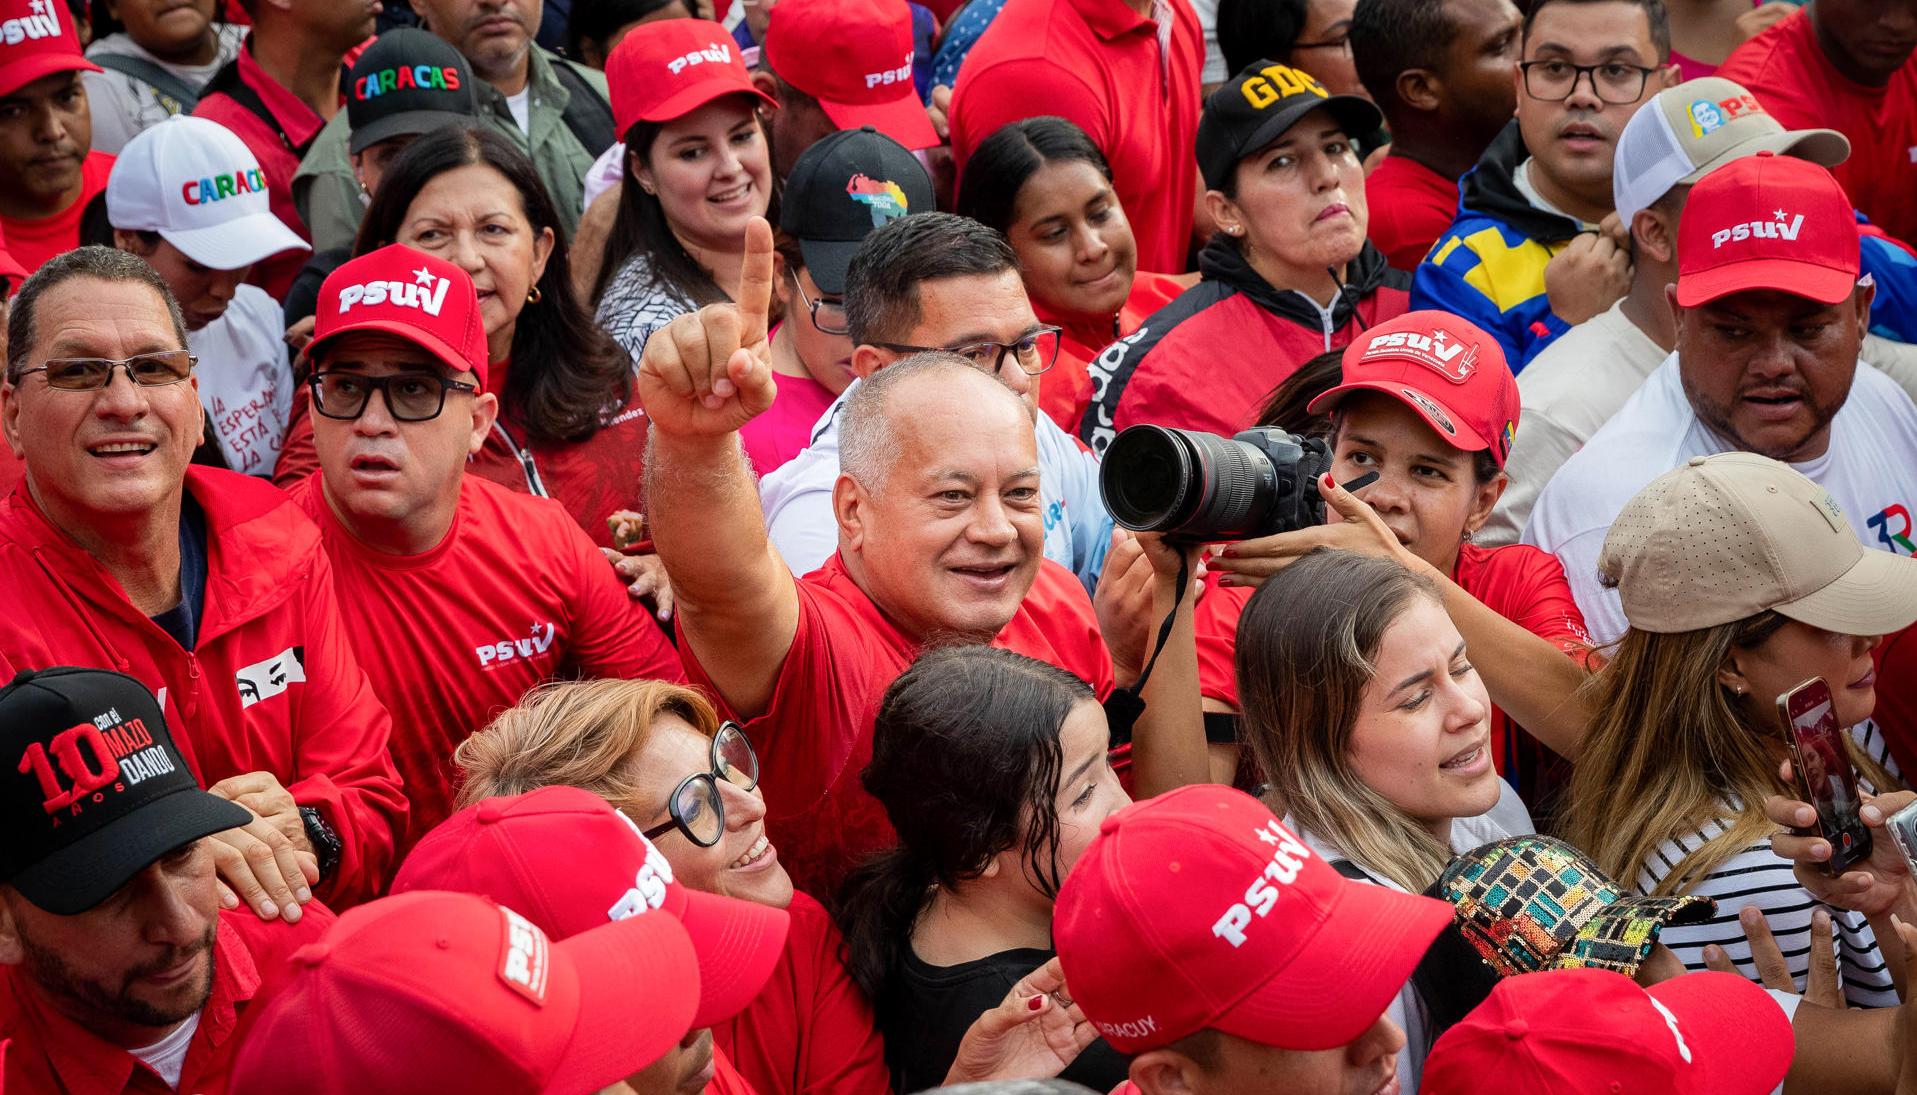 Vicepresidente del oficialista Partido Socialista Unido de Venezuela (PSUV), Diosdado Cabello.